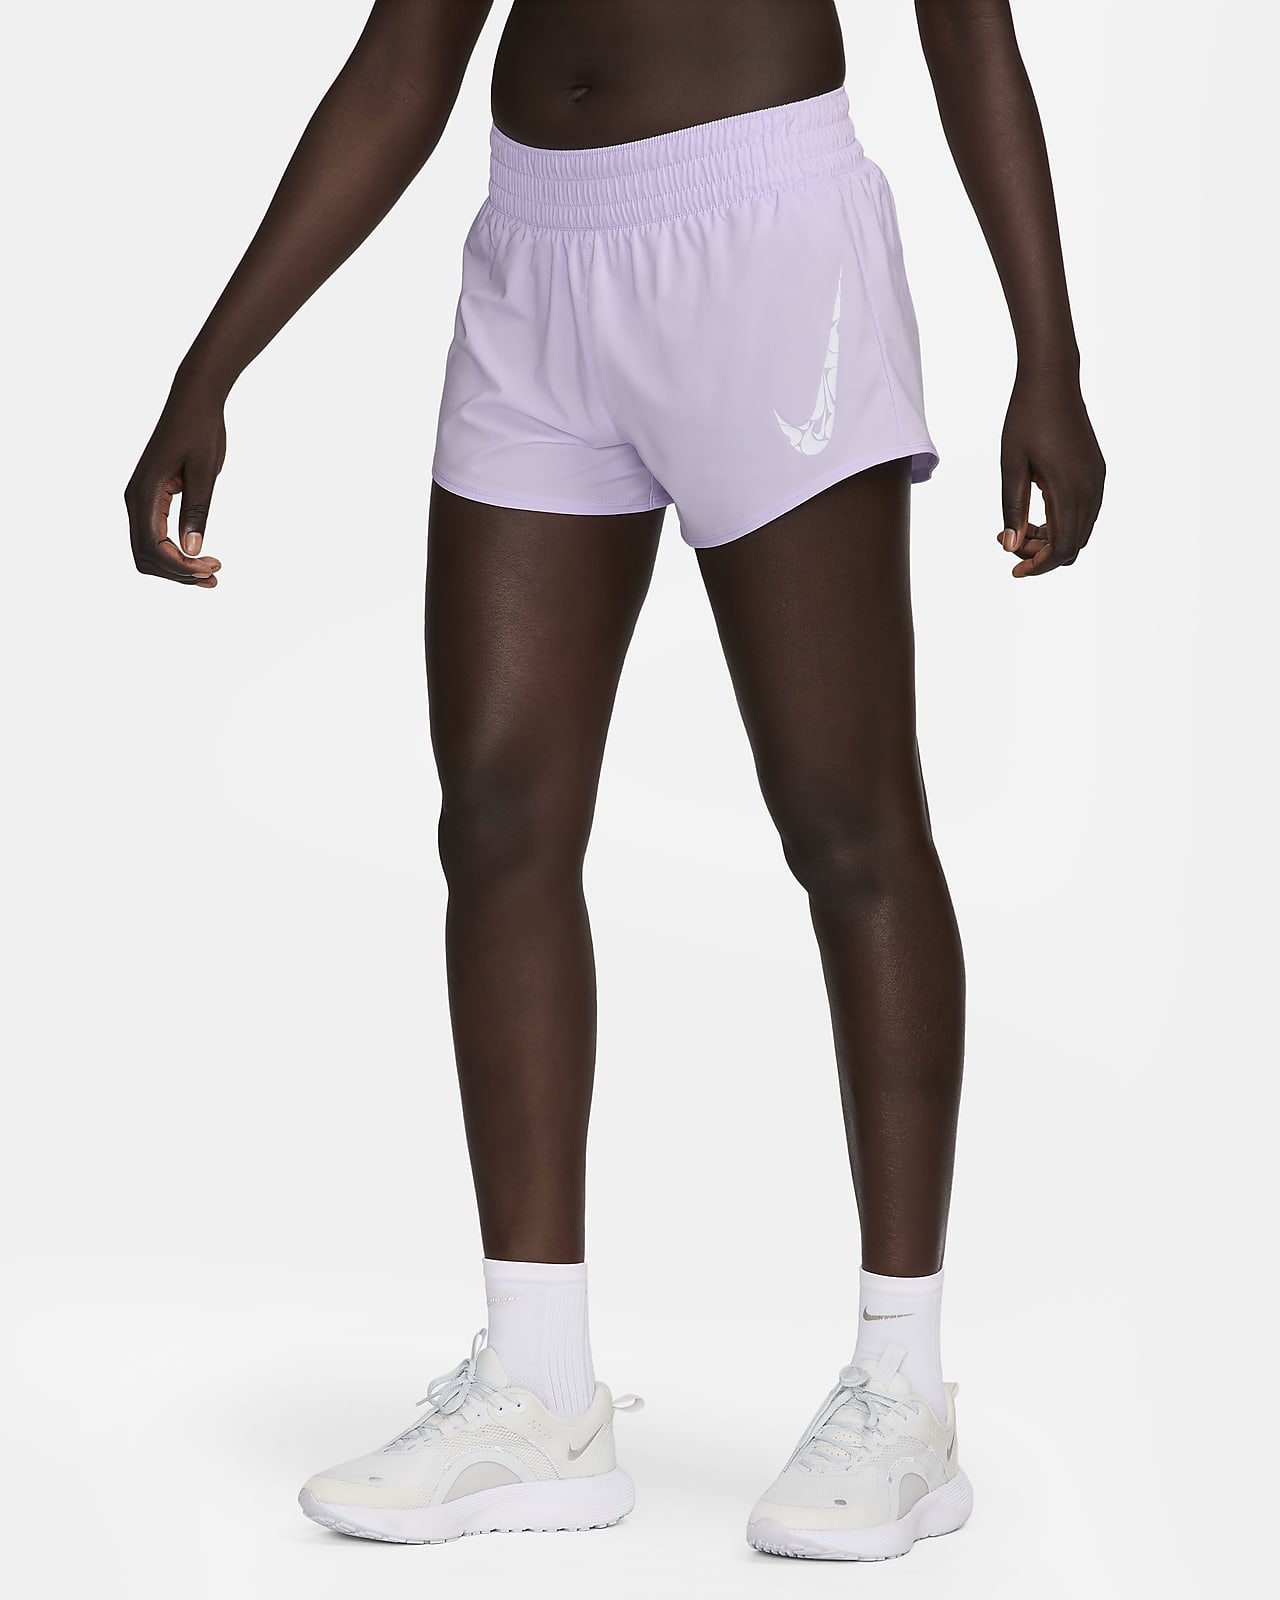 Dámské 8cm kraťasy Dri-FIT Nike One se středně vysokým pasem a všitými kalhotkami